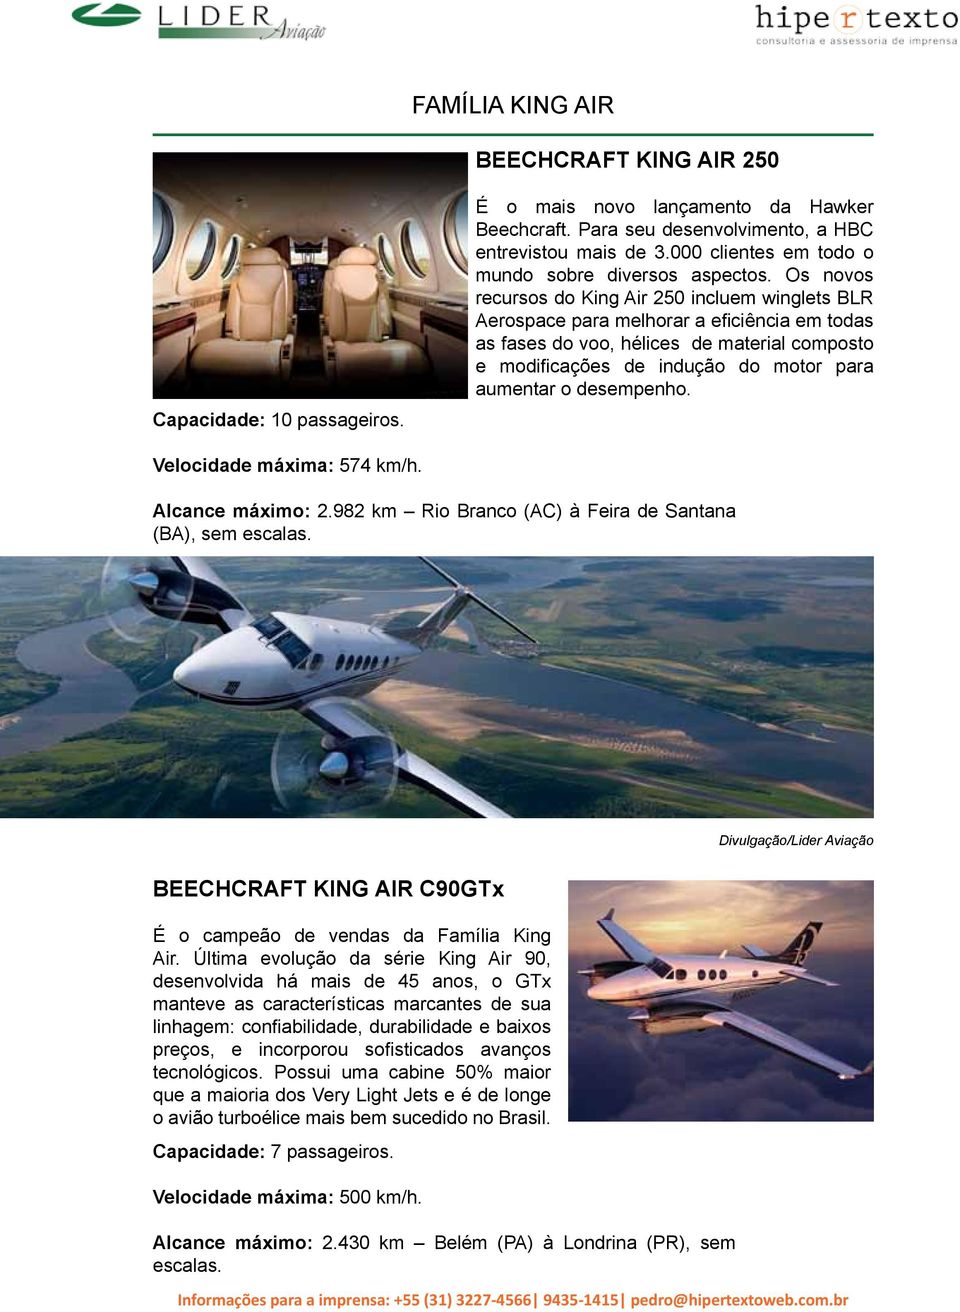 Os novos recursos do King Air 250 incluem winglets BLR Aerospace para melhorar a eficiência em todas as fases do voo, hélices de material composto e modificações de indução do motor para aumentar o